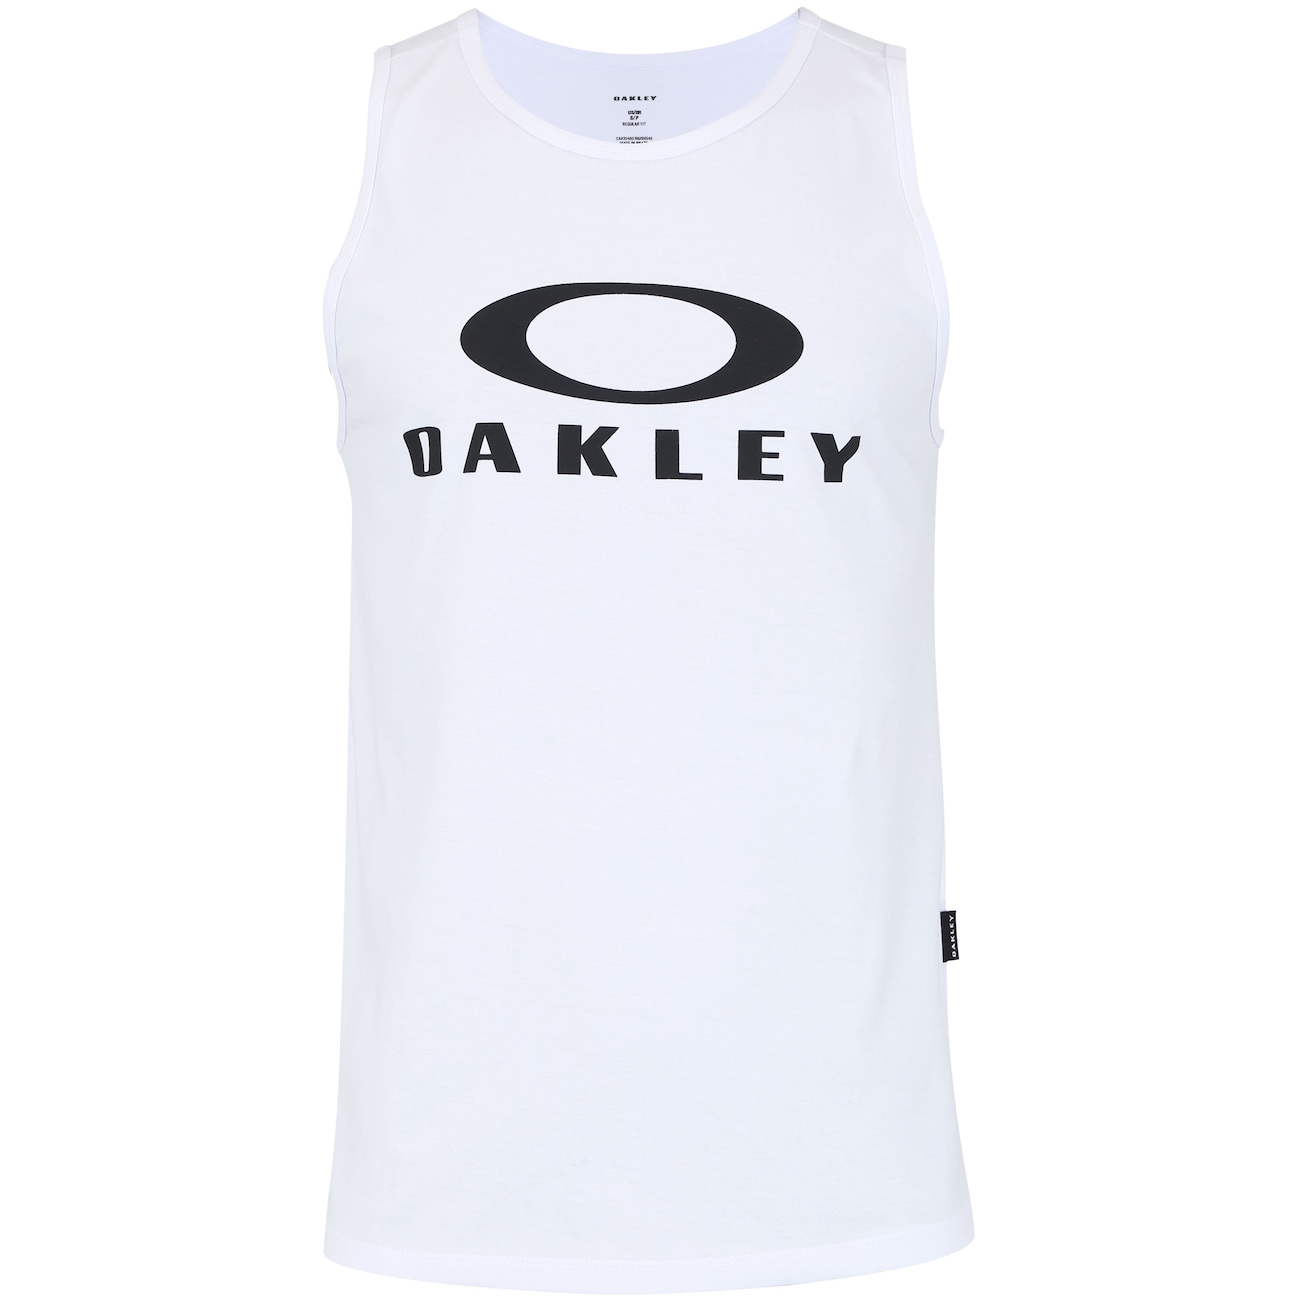 Mieten Höhepunkt Angegeben camiseta oakley in Bearbeitung Extrem Regnerisch